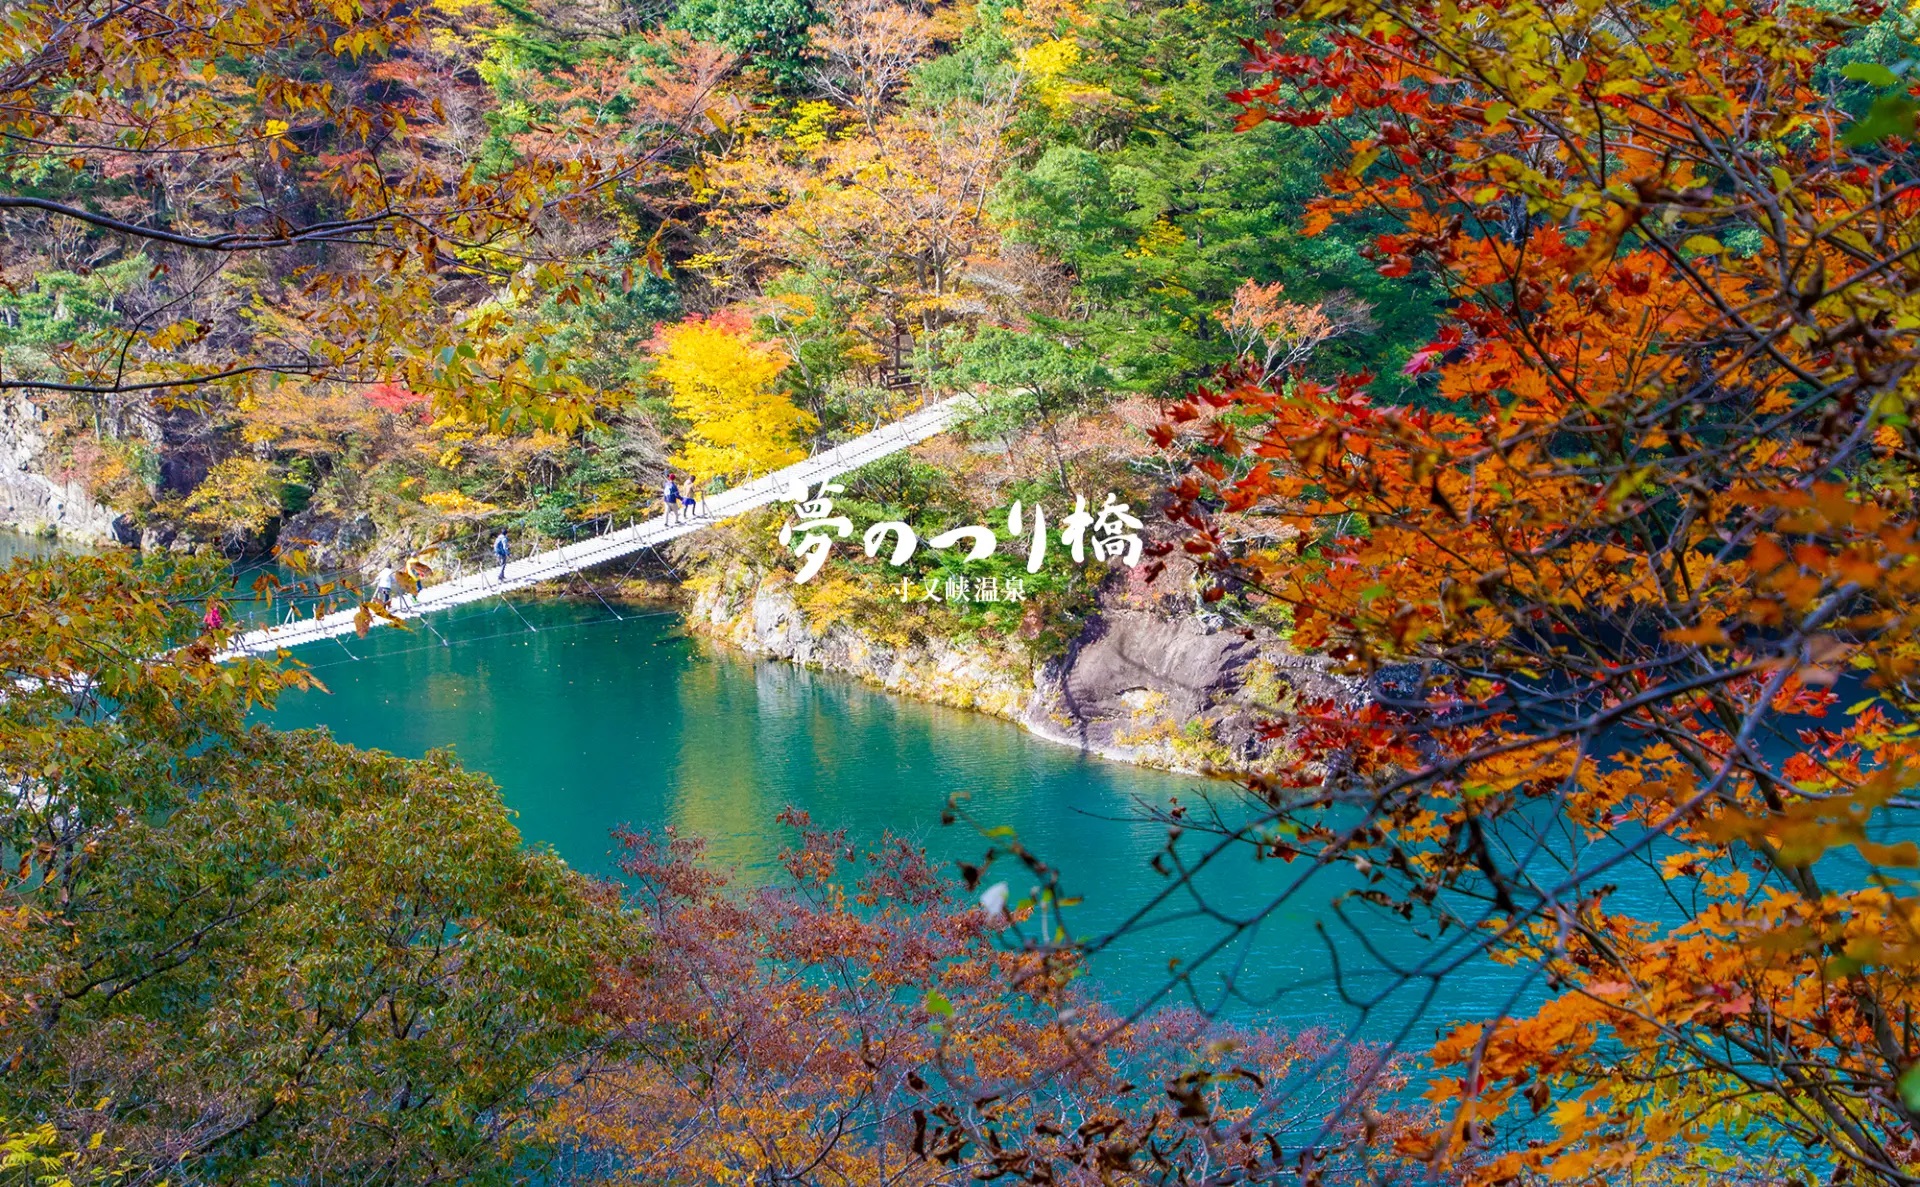 Yume no Tsuribashi - Cây cầu treo trong mơ 3 tiện ích